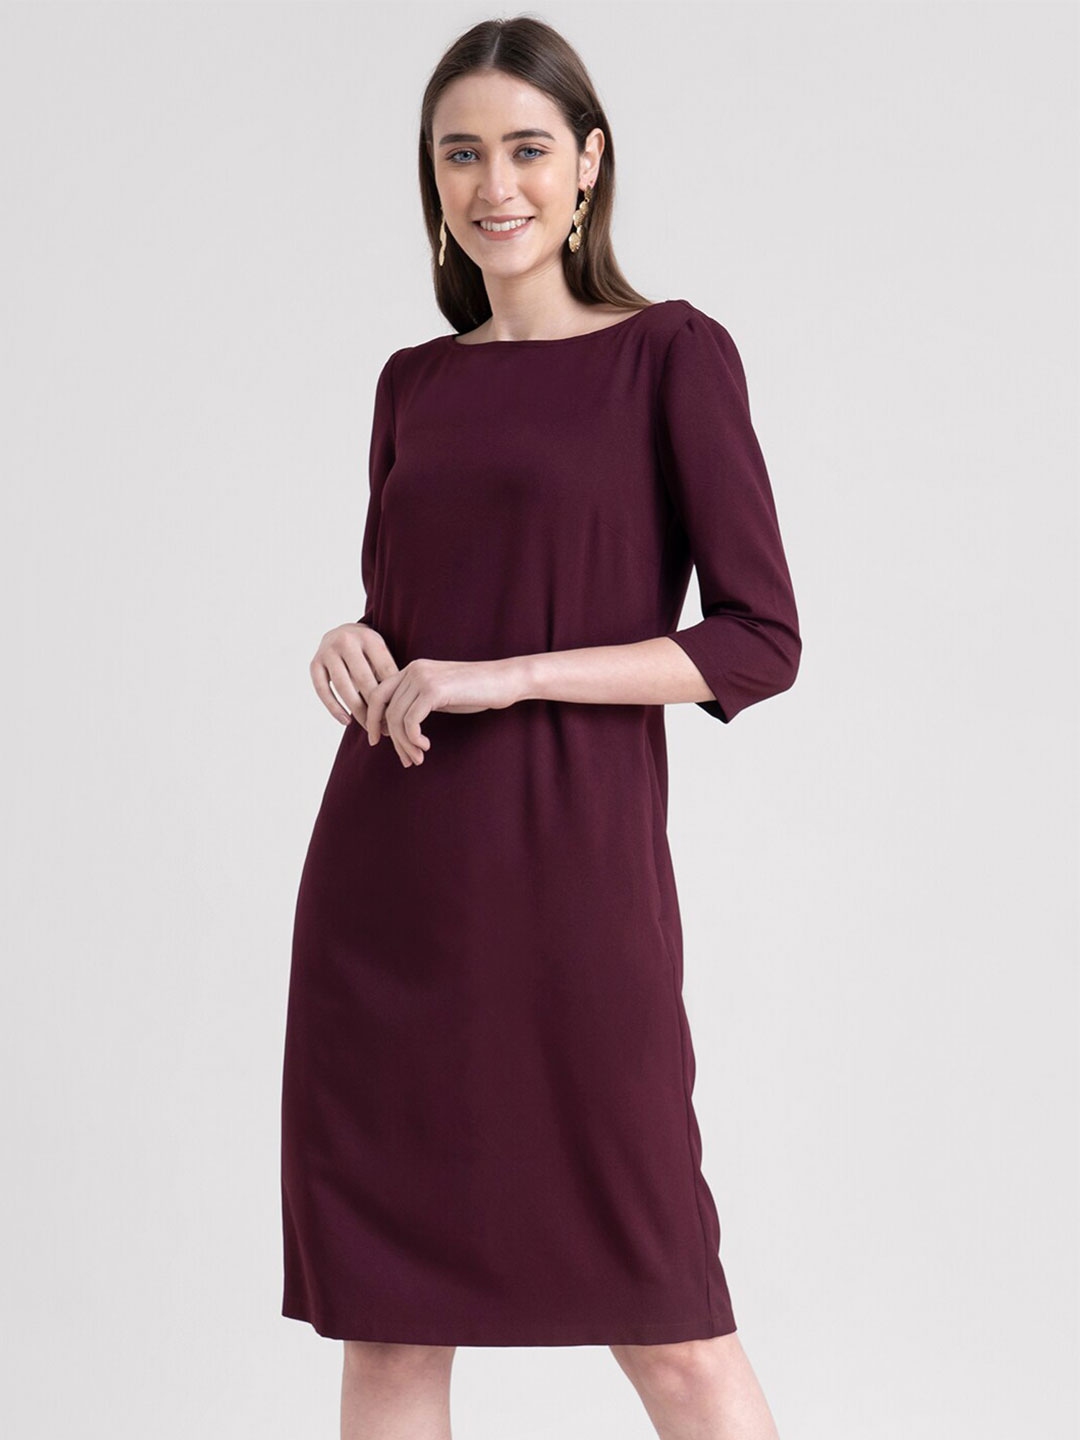 Buy FableStreet Maroon Formal Sheath Dress - Dresses for Women 16935932 ...